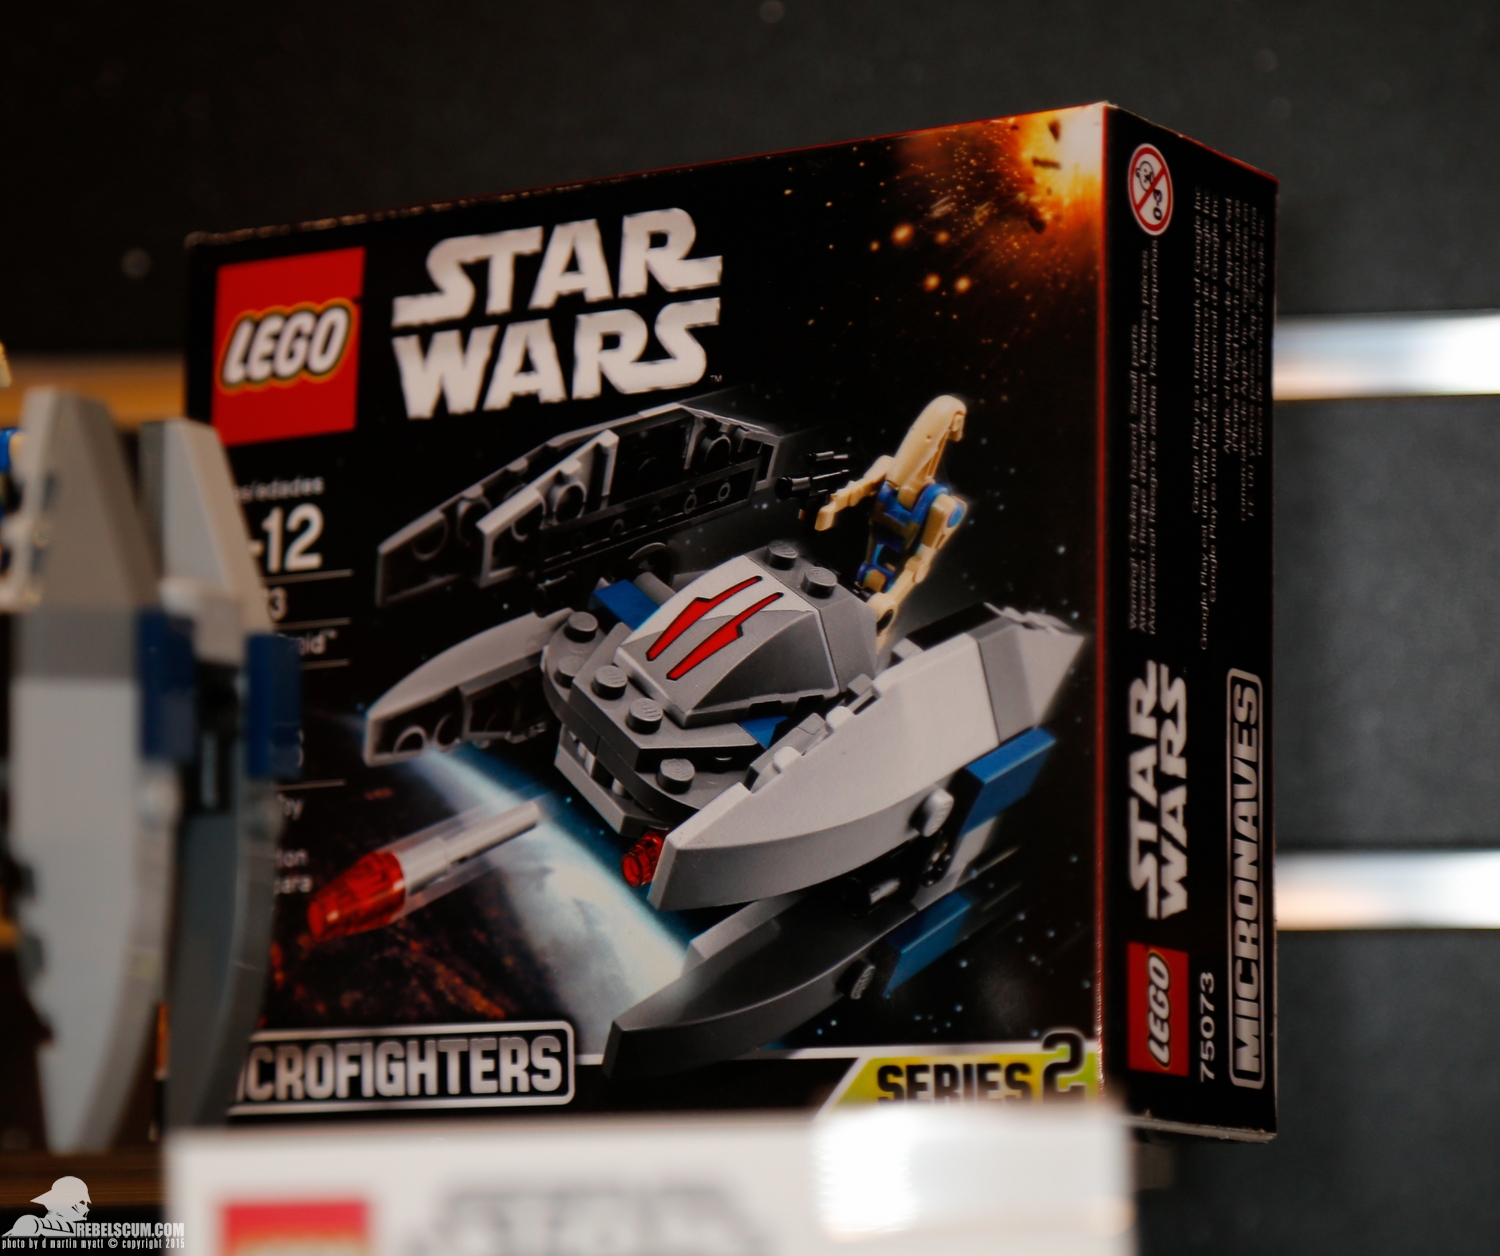 2015-International-Toy-Fair-Star-Wars-Lego-009.jpg